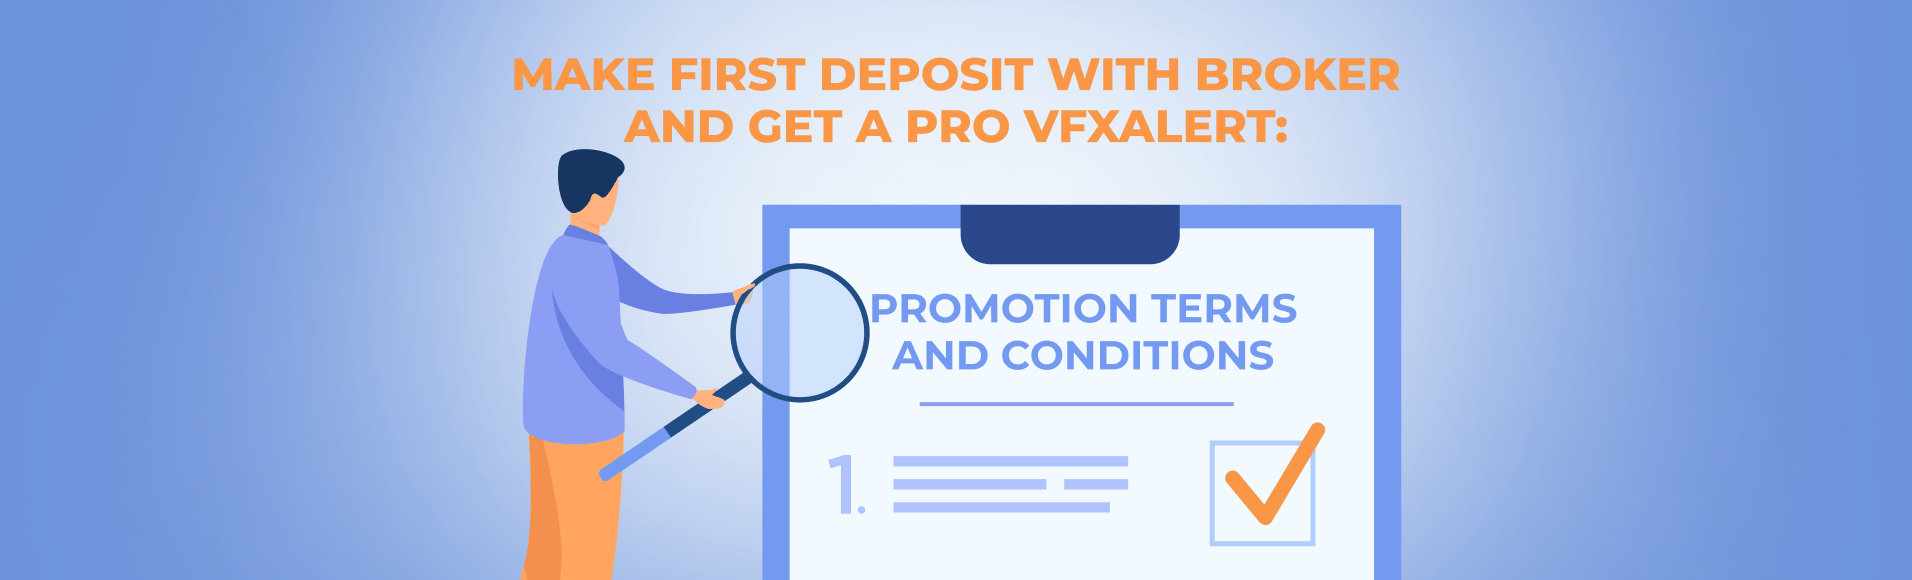 ब्रोकर के पास सबसे पहले जमा करें और PRO vfxAlert प्राप्त करें: प्रमोशन के नियम और शर्तें।